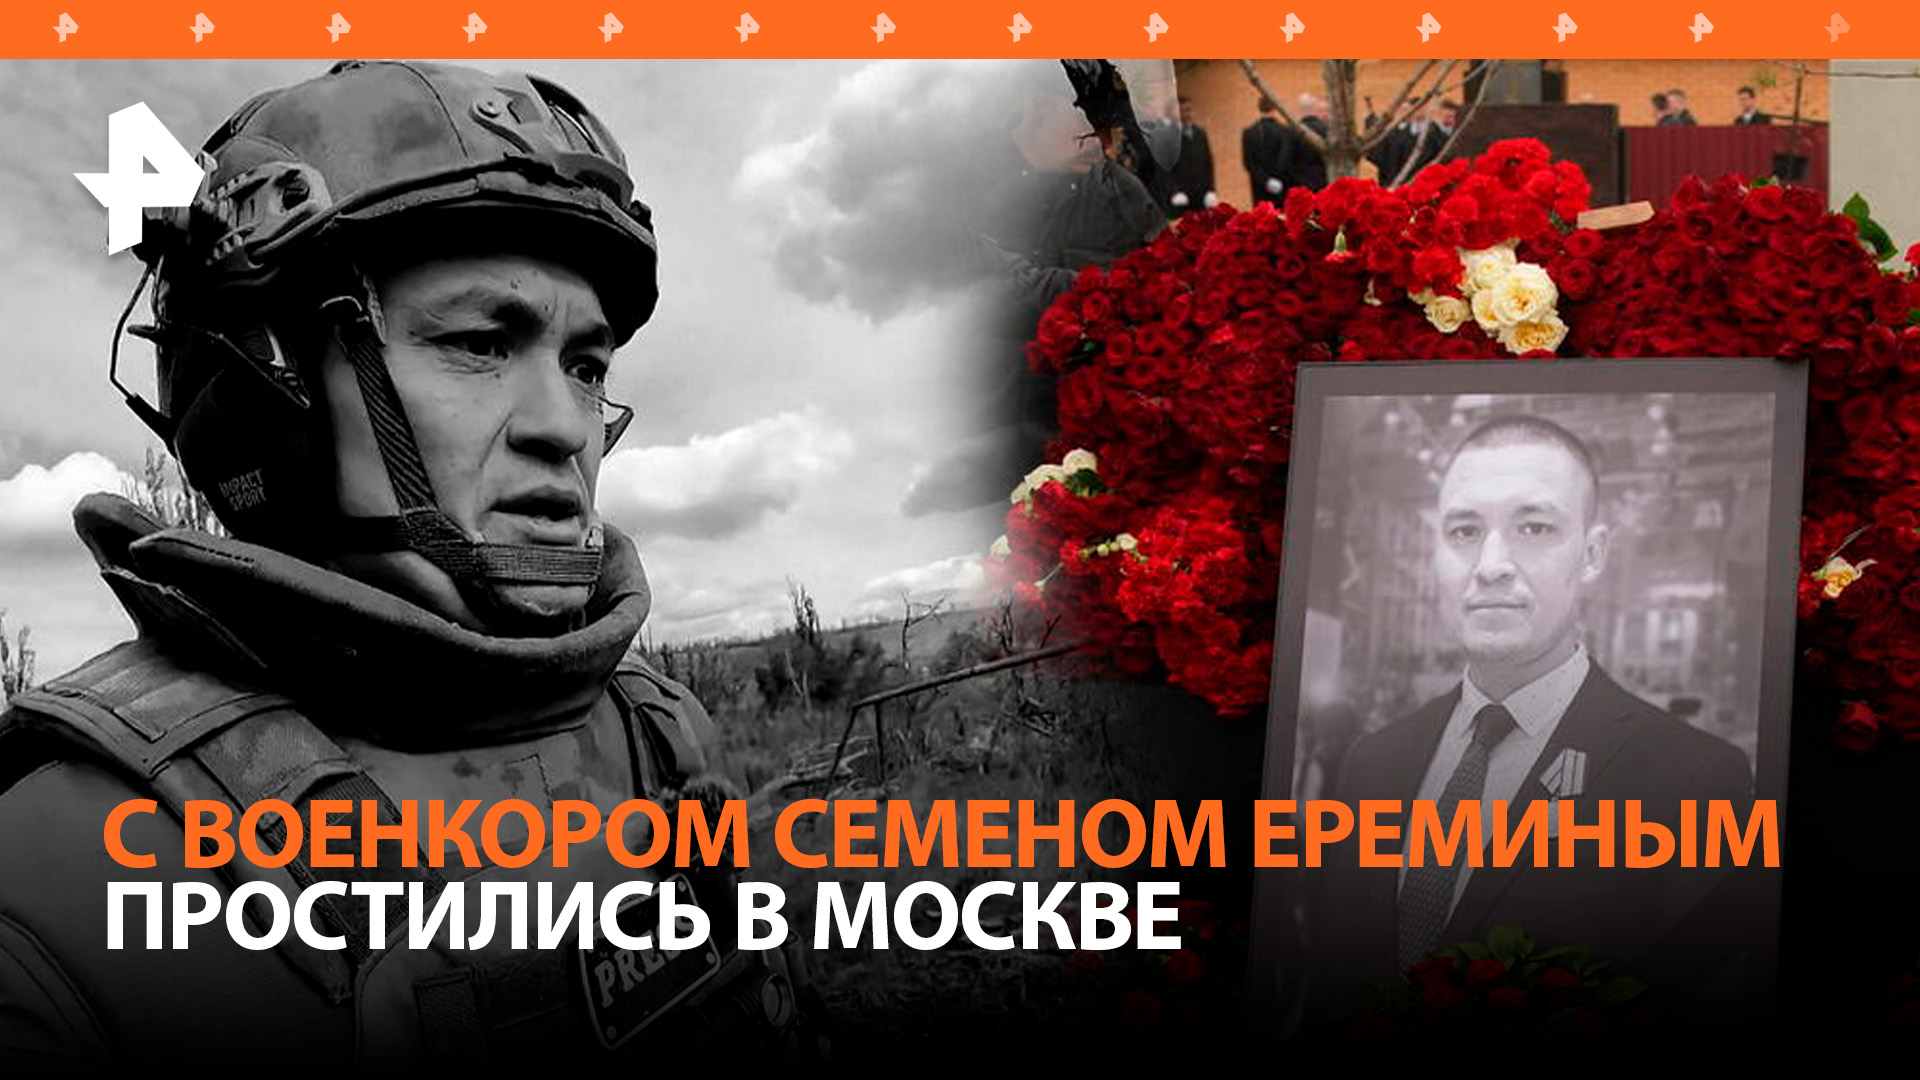 Останется в сердце каждого: военкора "Известий" Семена Еремина похоронили на Троекуровском кладбище